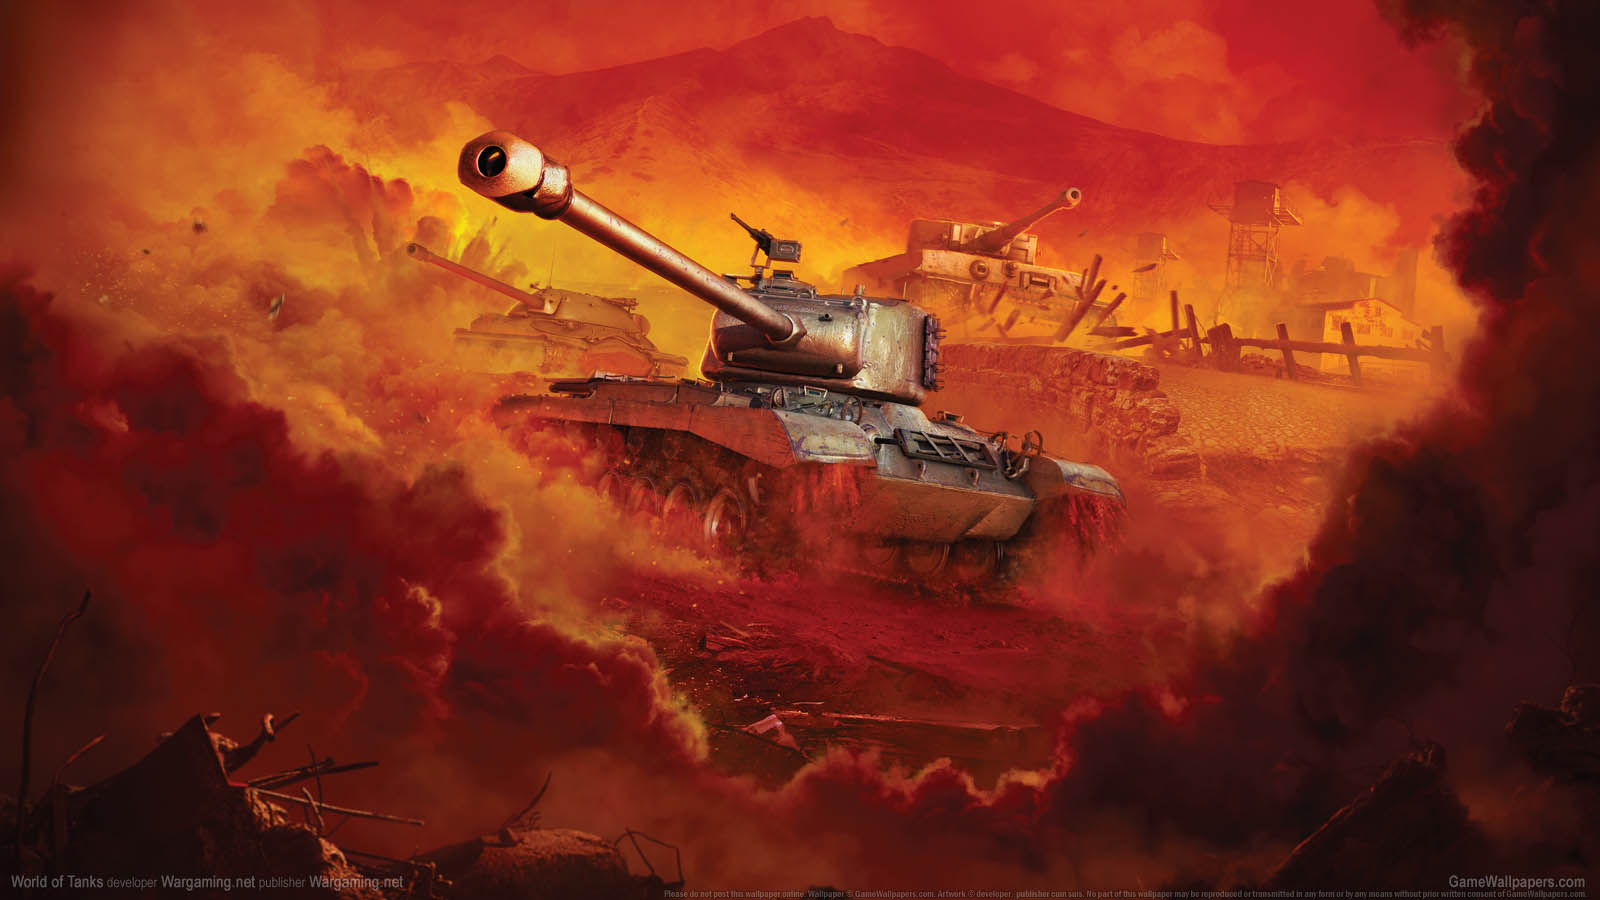 World of Tanks fond d'cran 14 1600x900